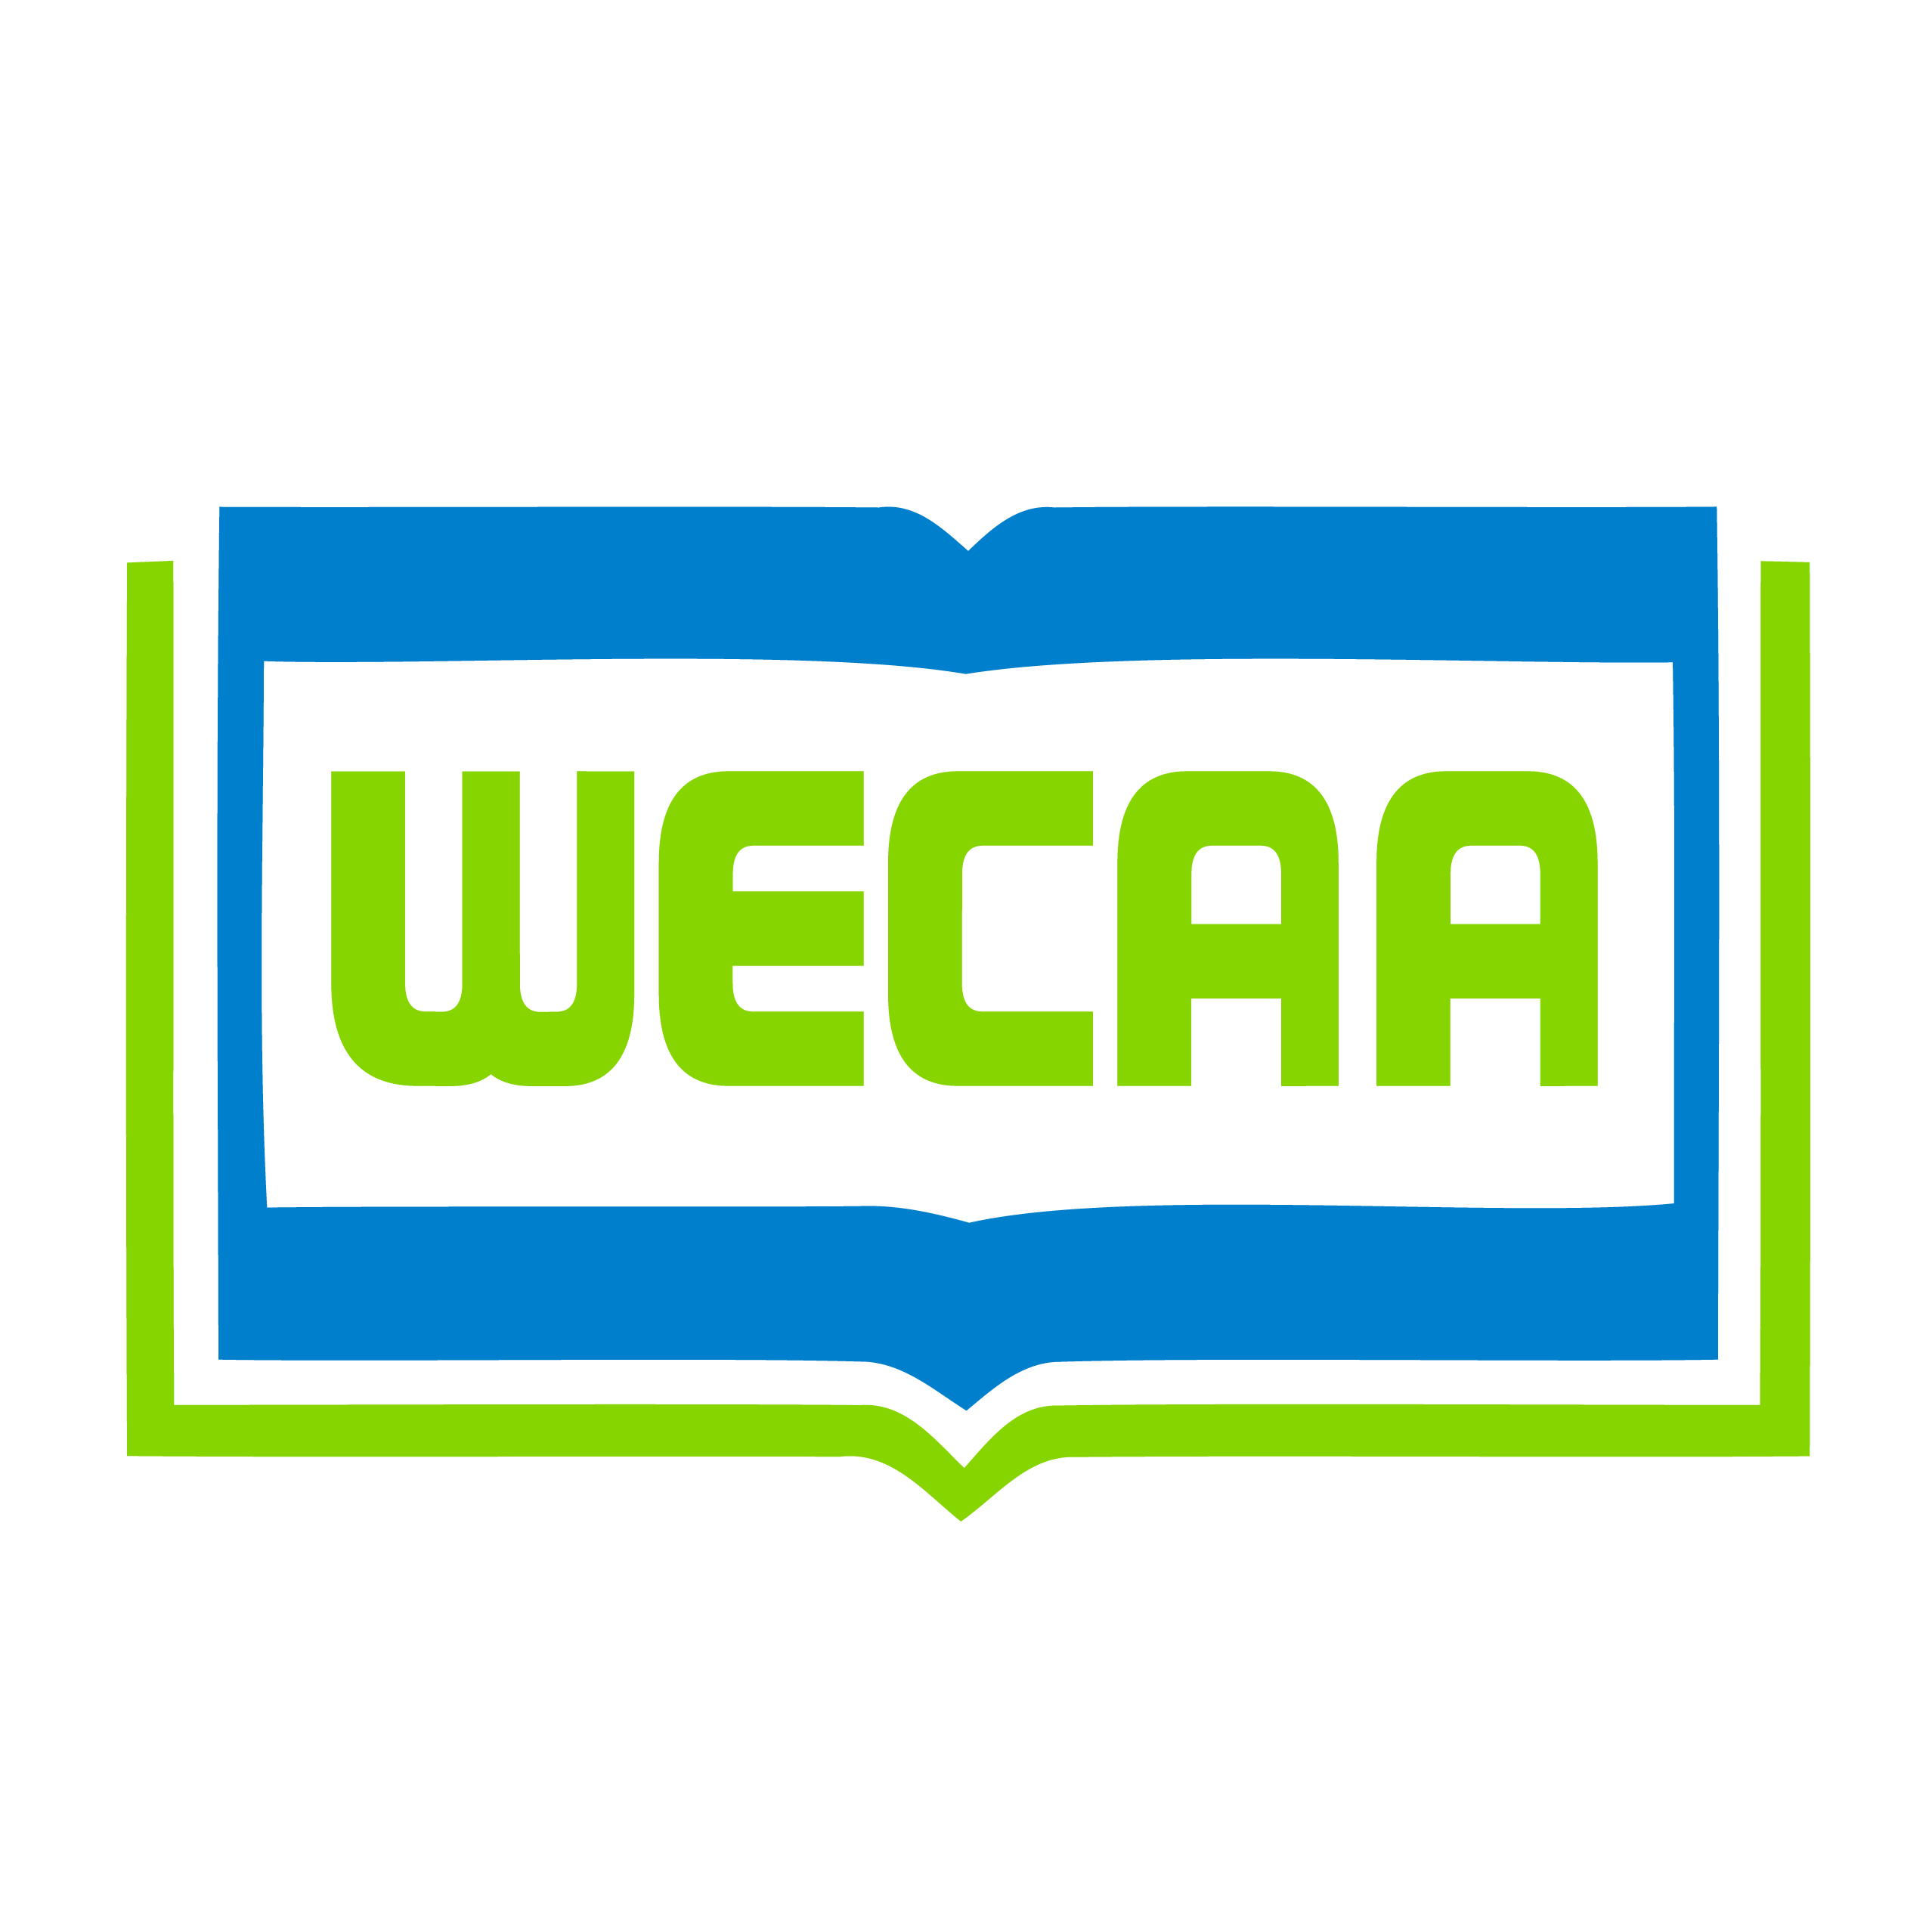 WECAA